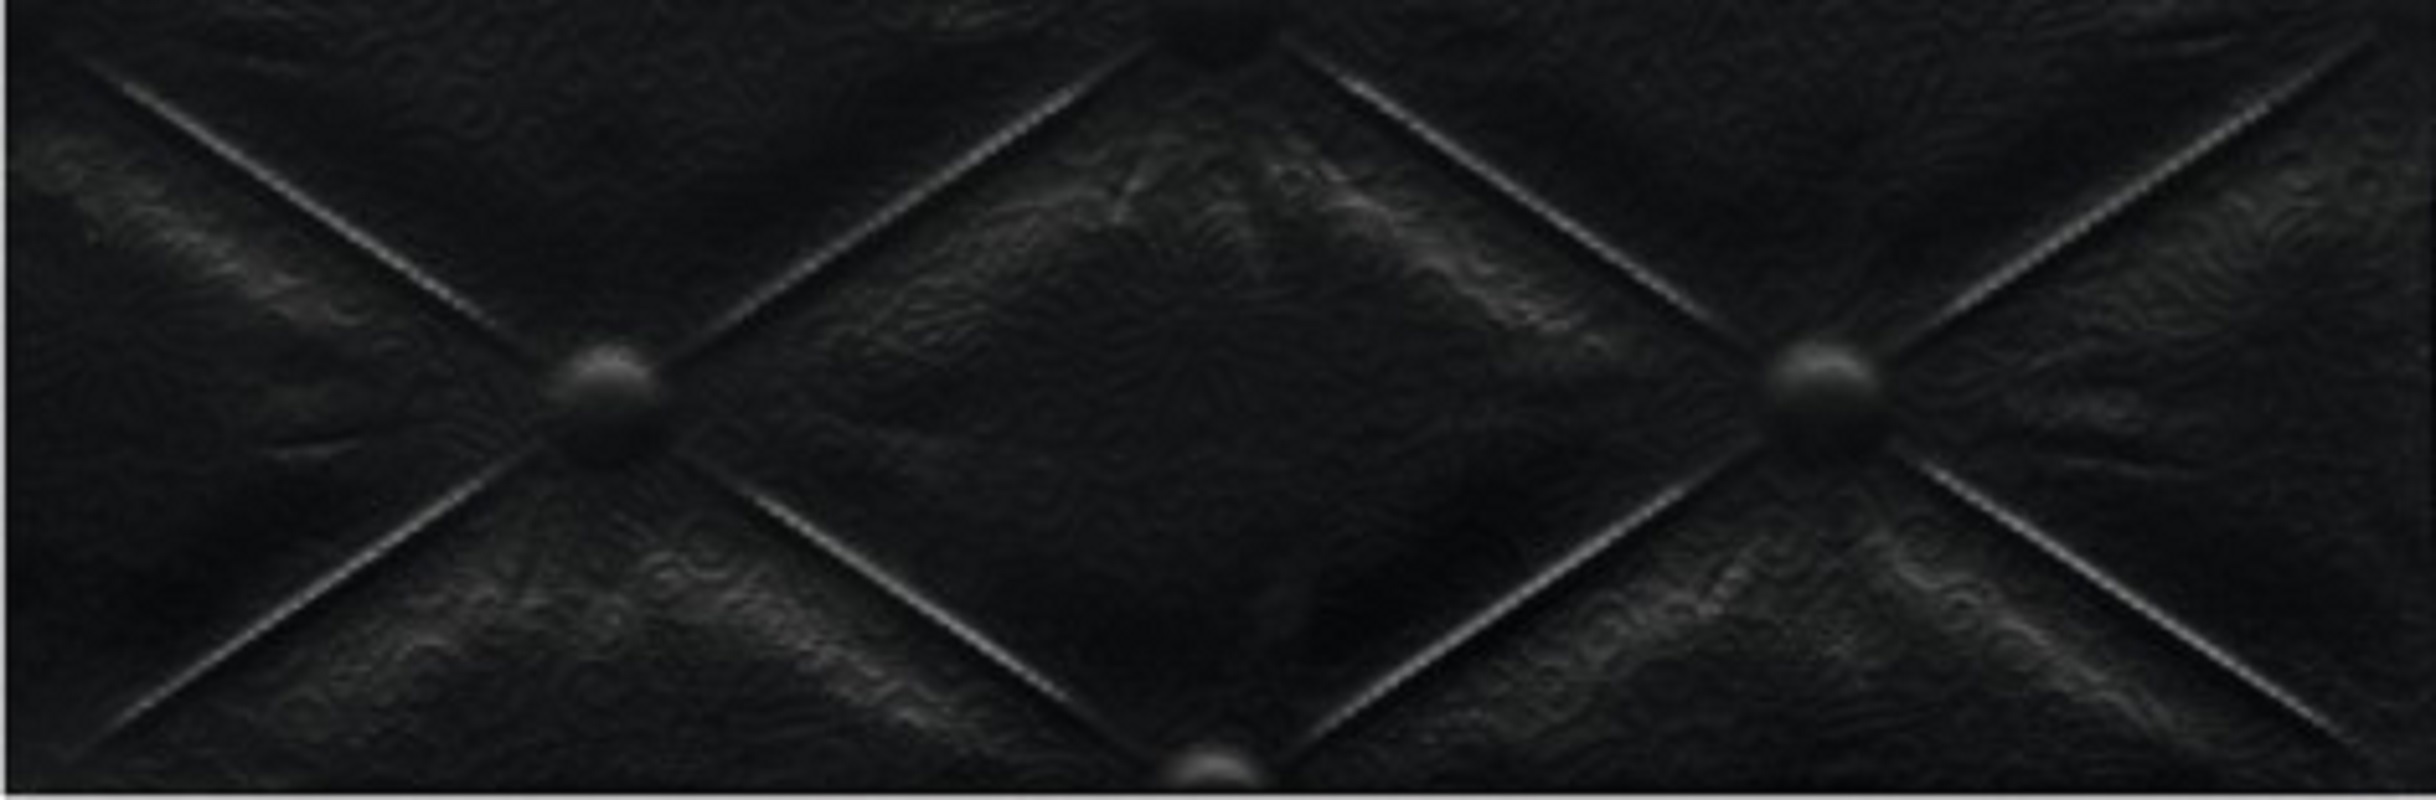 91062103 Керамическая плитка Монро CDB00003591 13.2x40см 0.05 м² цвет черный STLM-0463469 КЕРАМИН